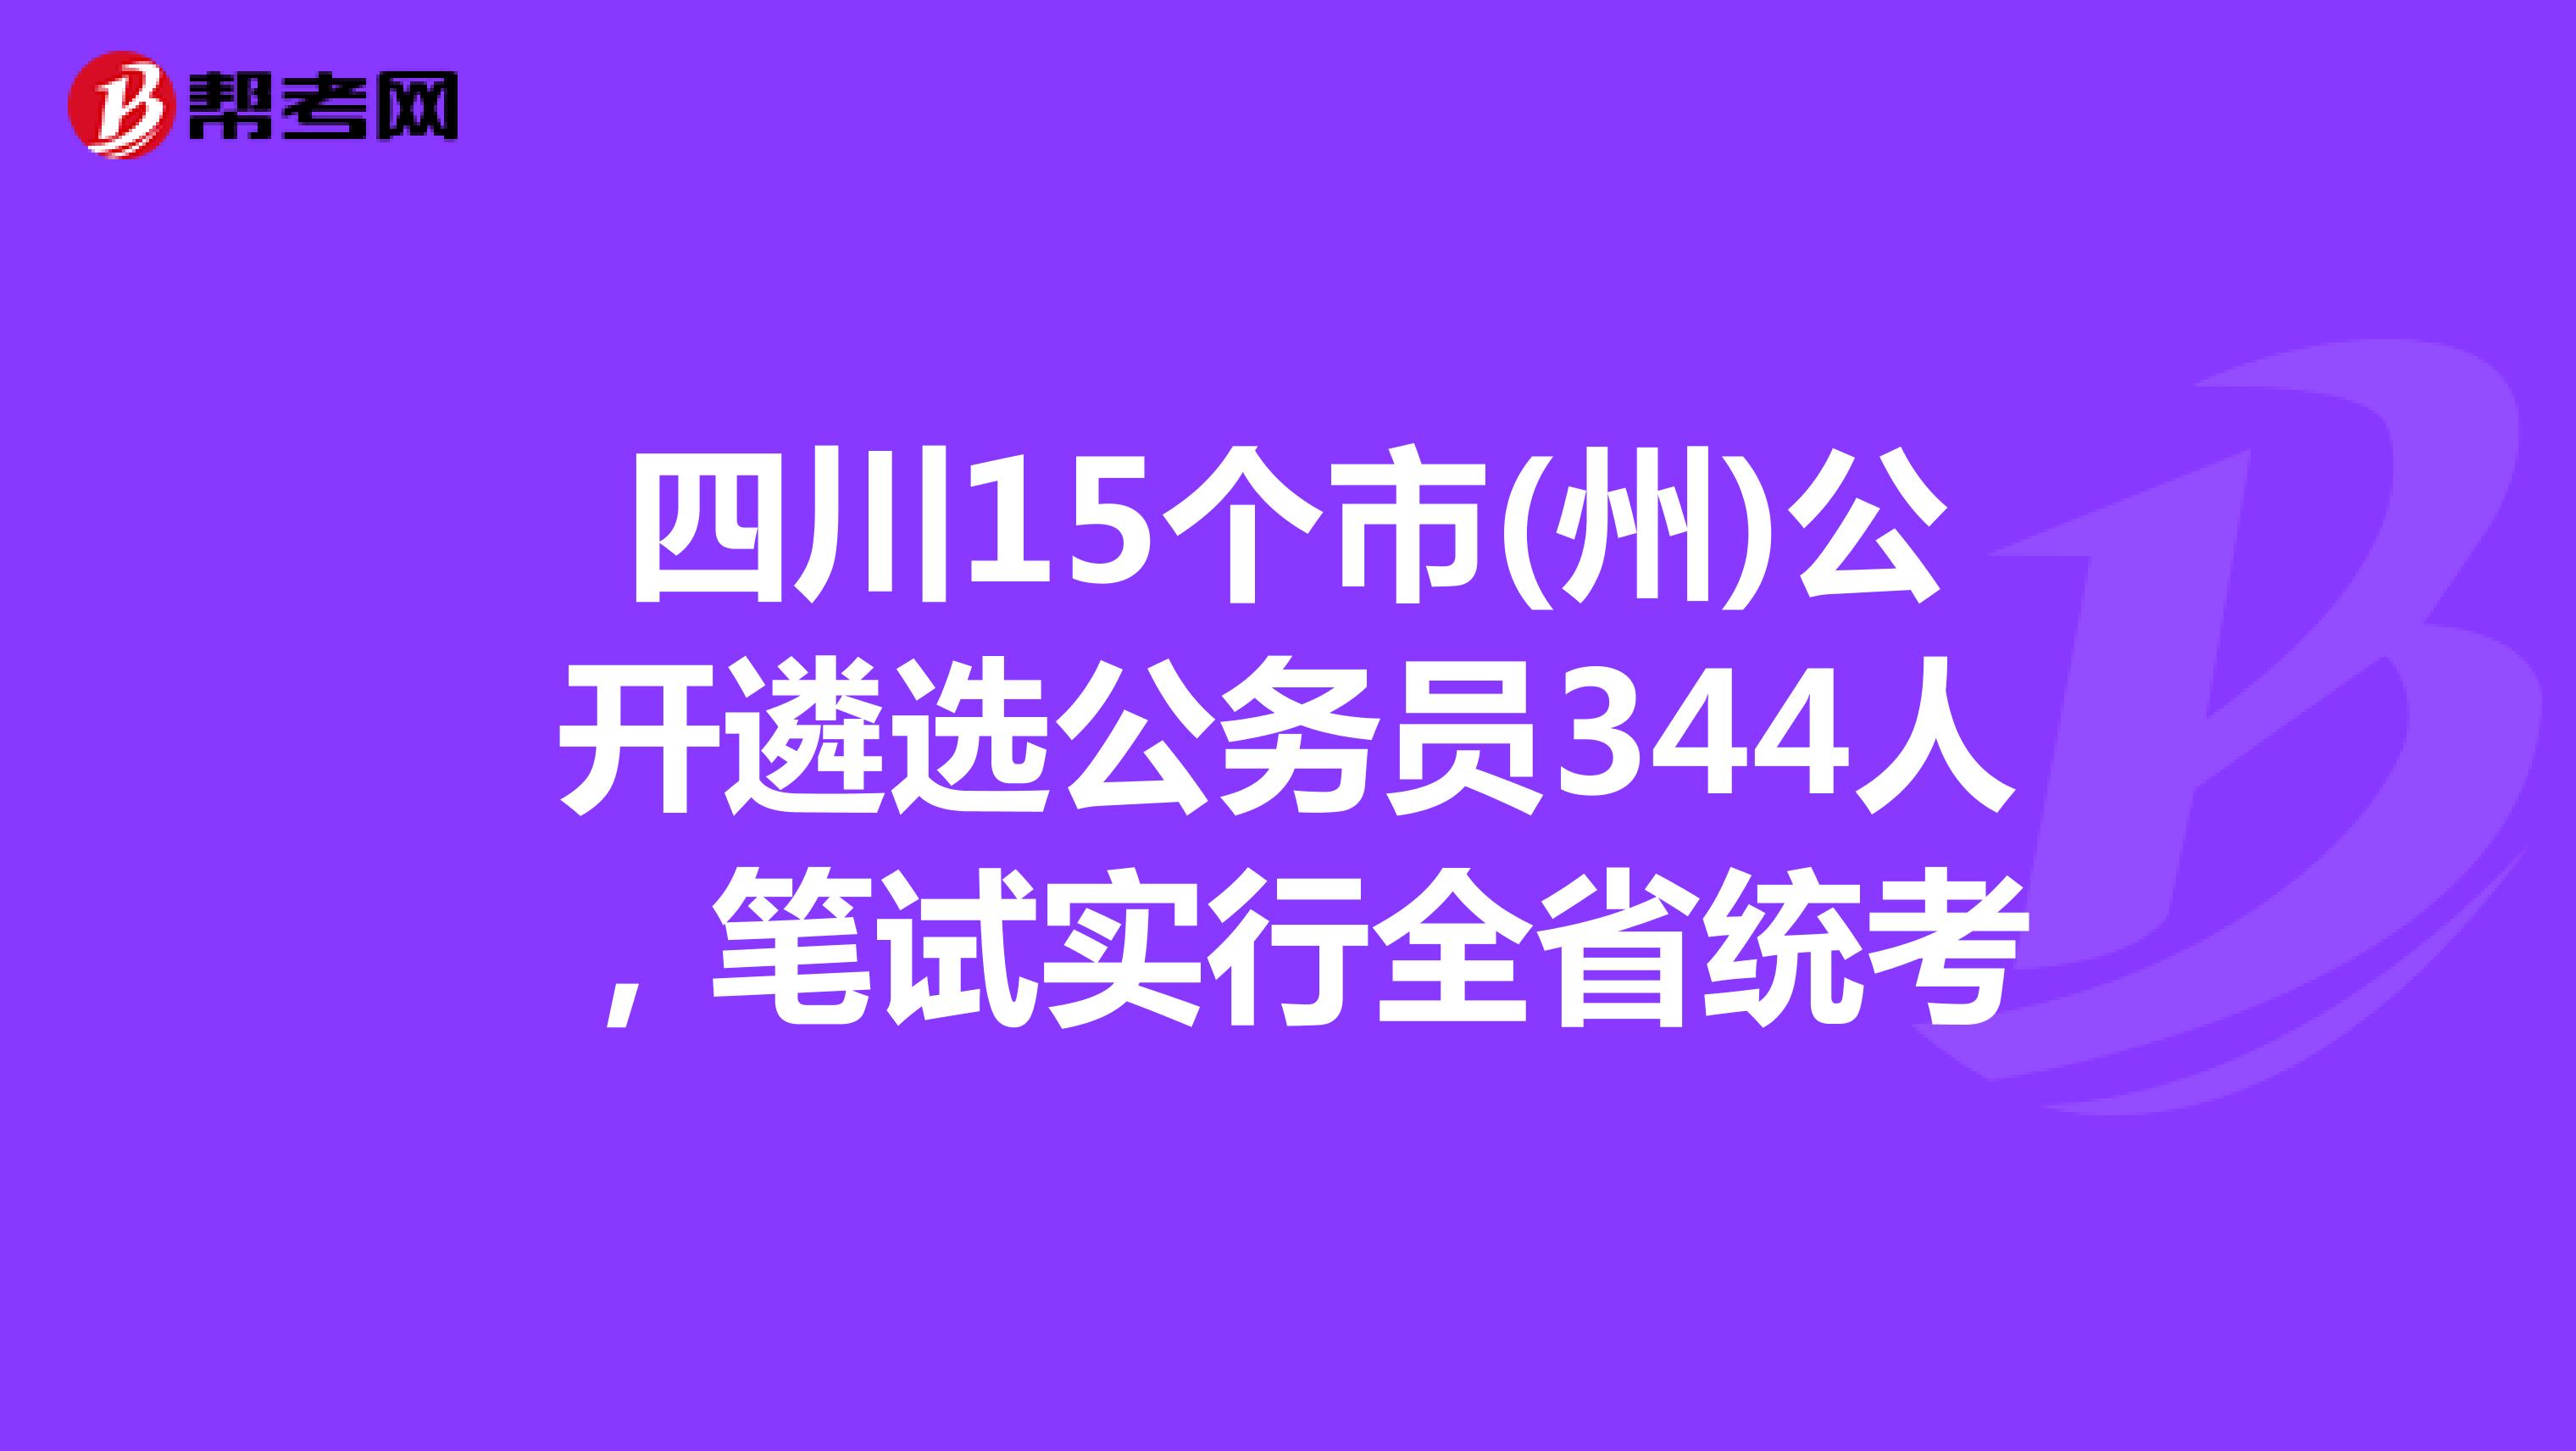 四川15个市(州)公开遴选公务员344人，笔试实行全省统考